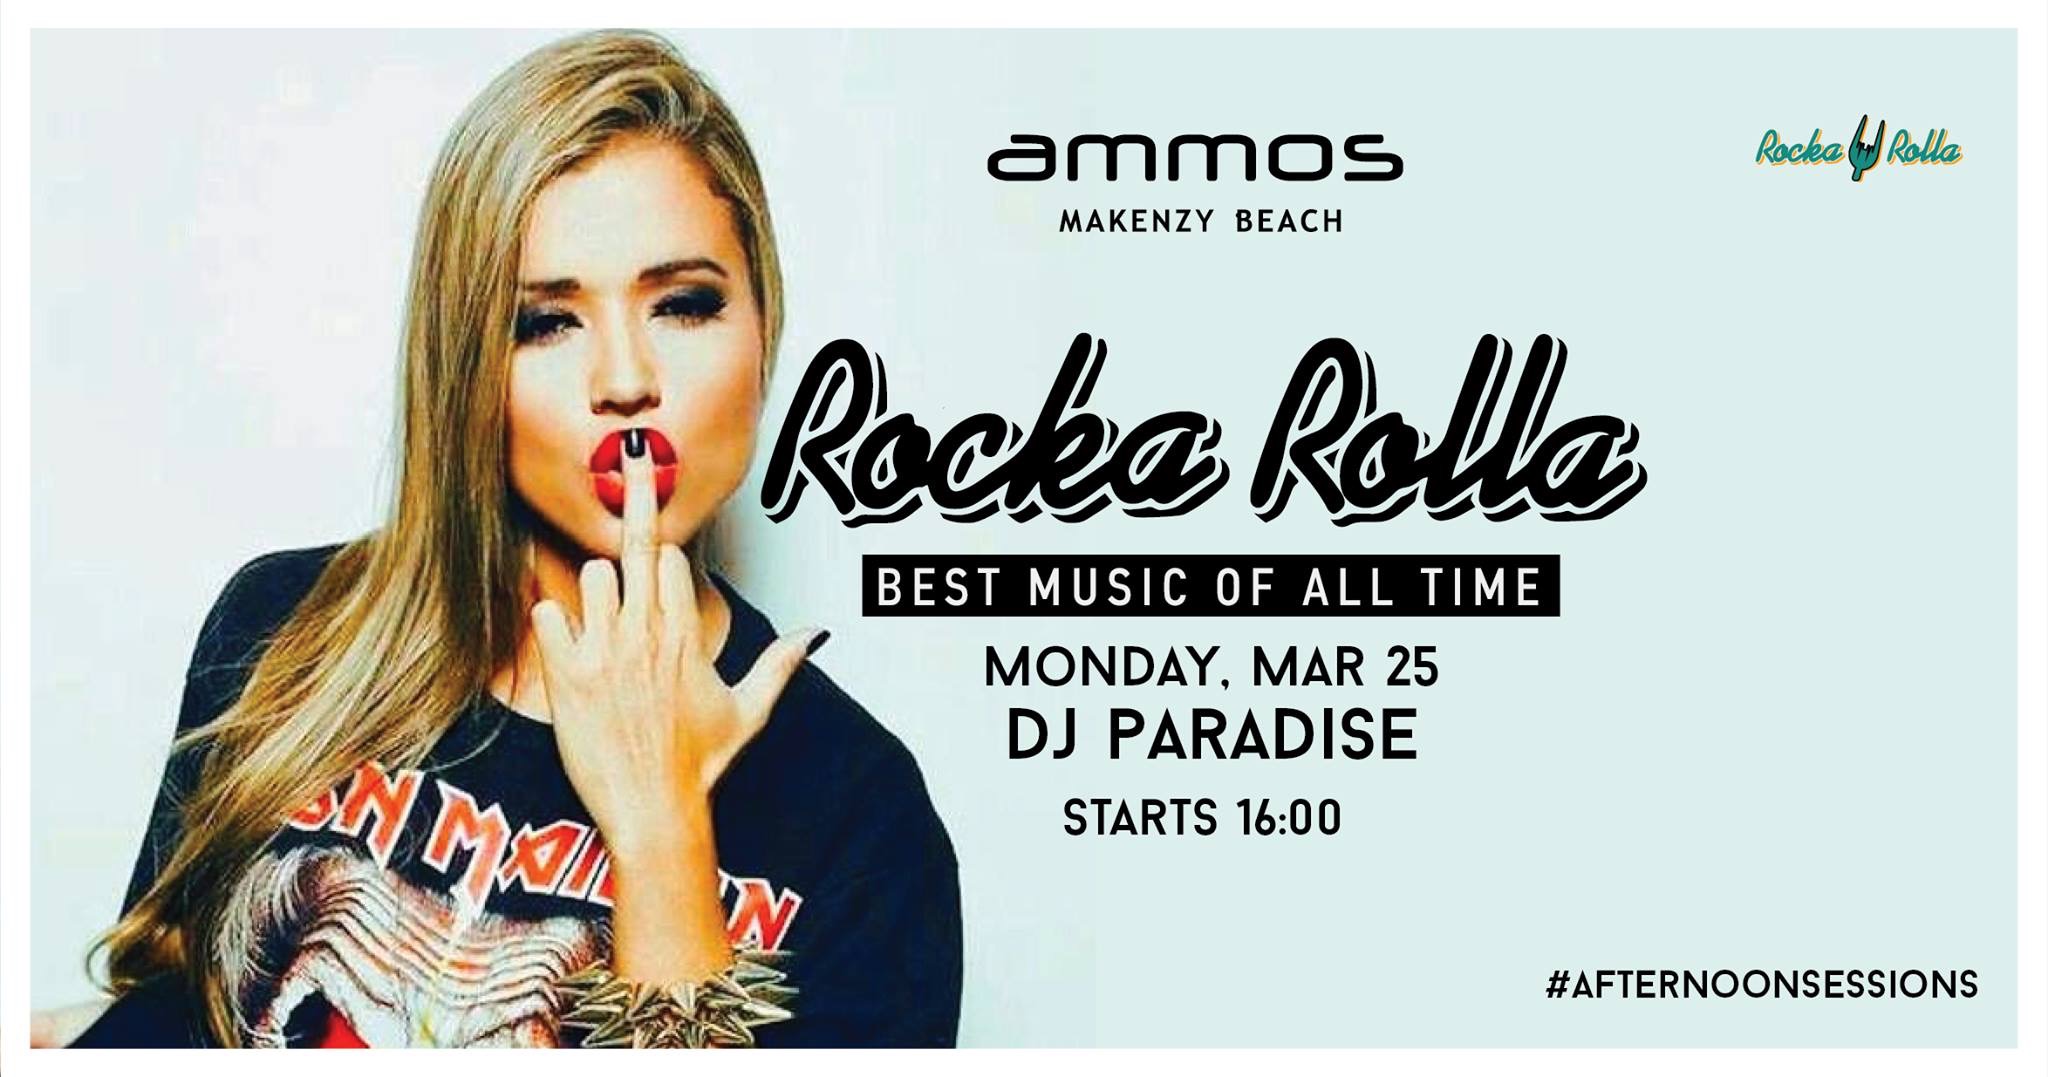 Τα απογεύματα μας στο Ammos Beach Bar επιστρέφουν με Rocka Rolla